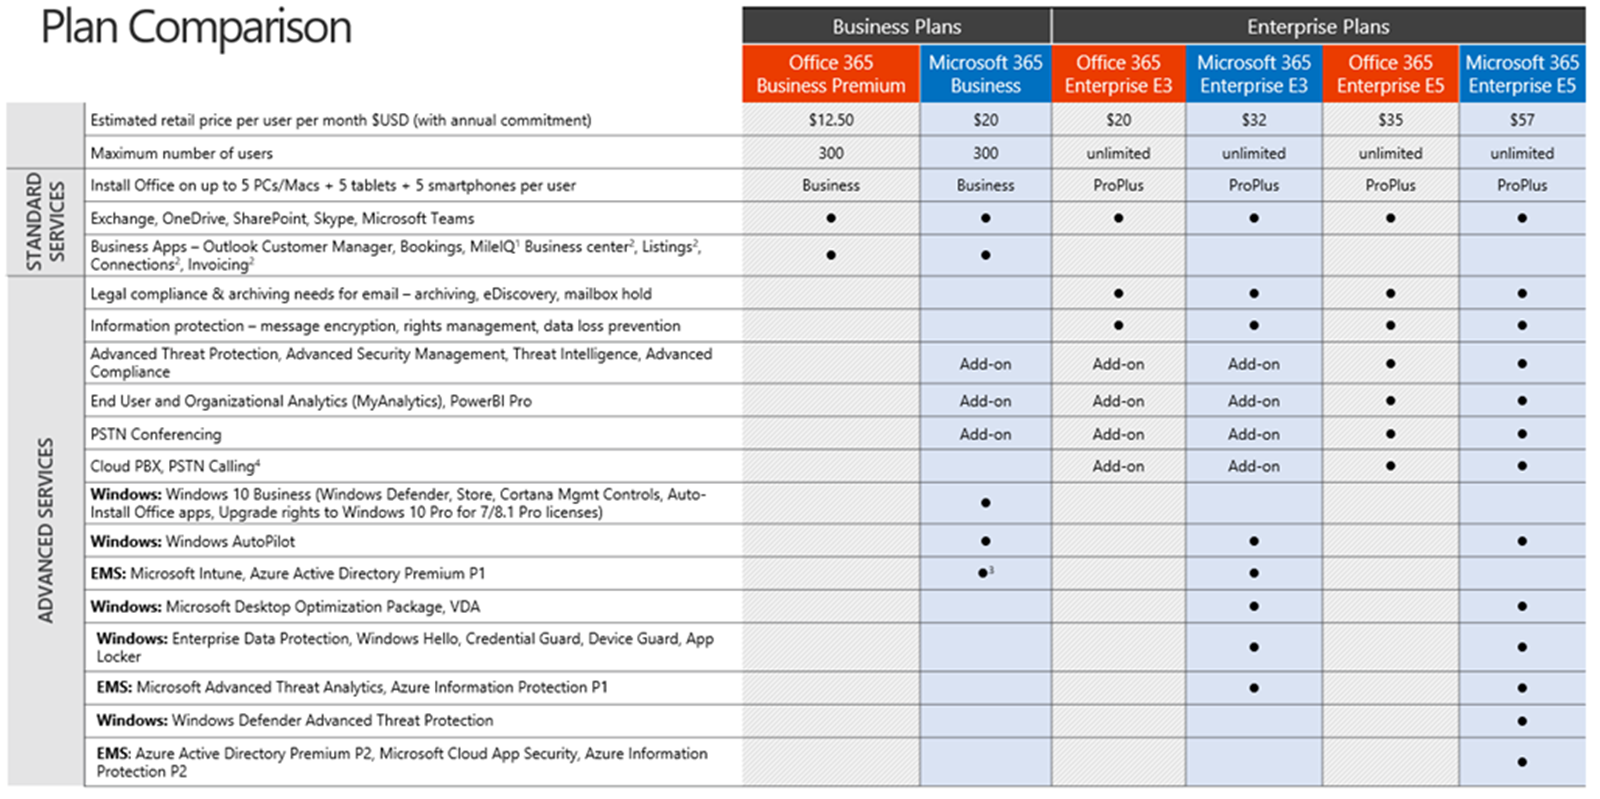 m365 business plans comparison pdf